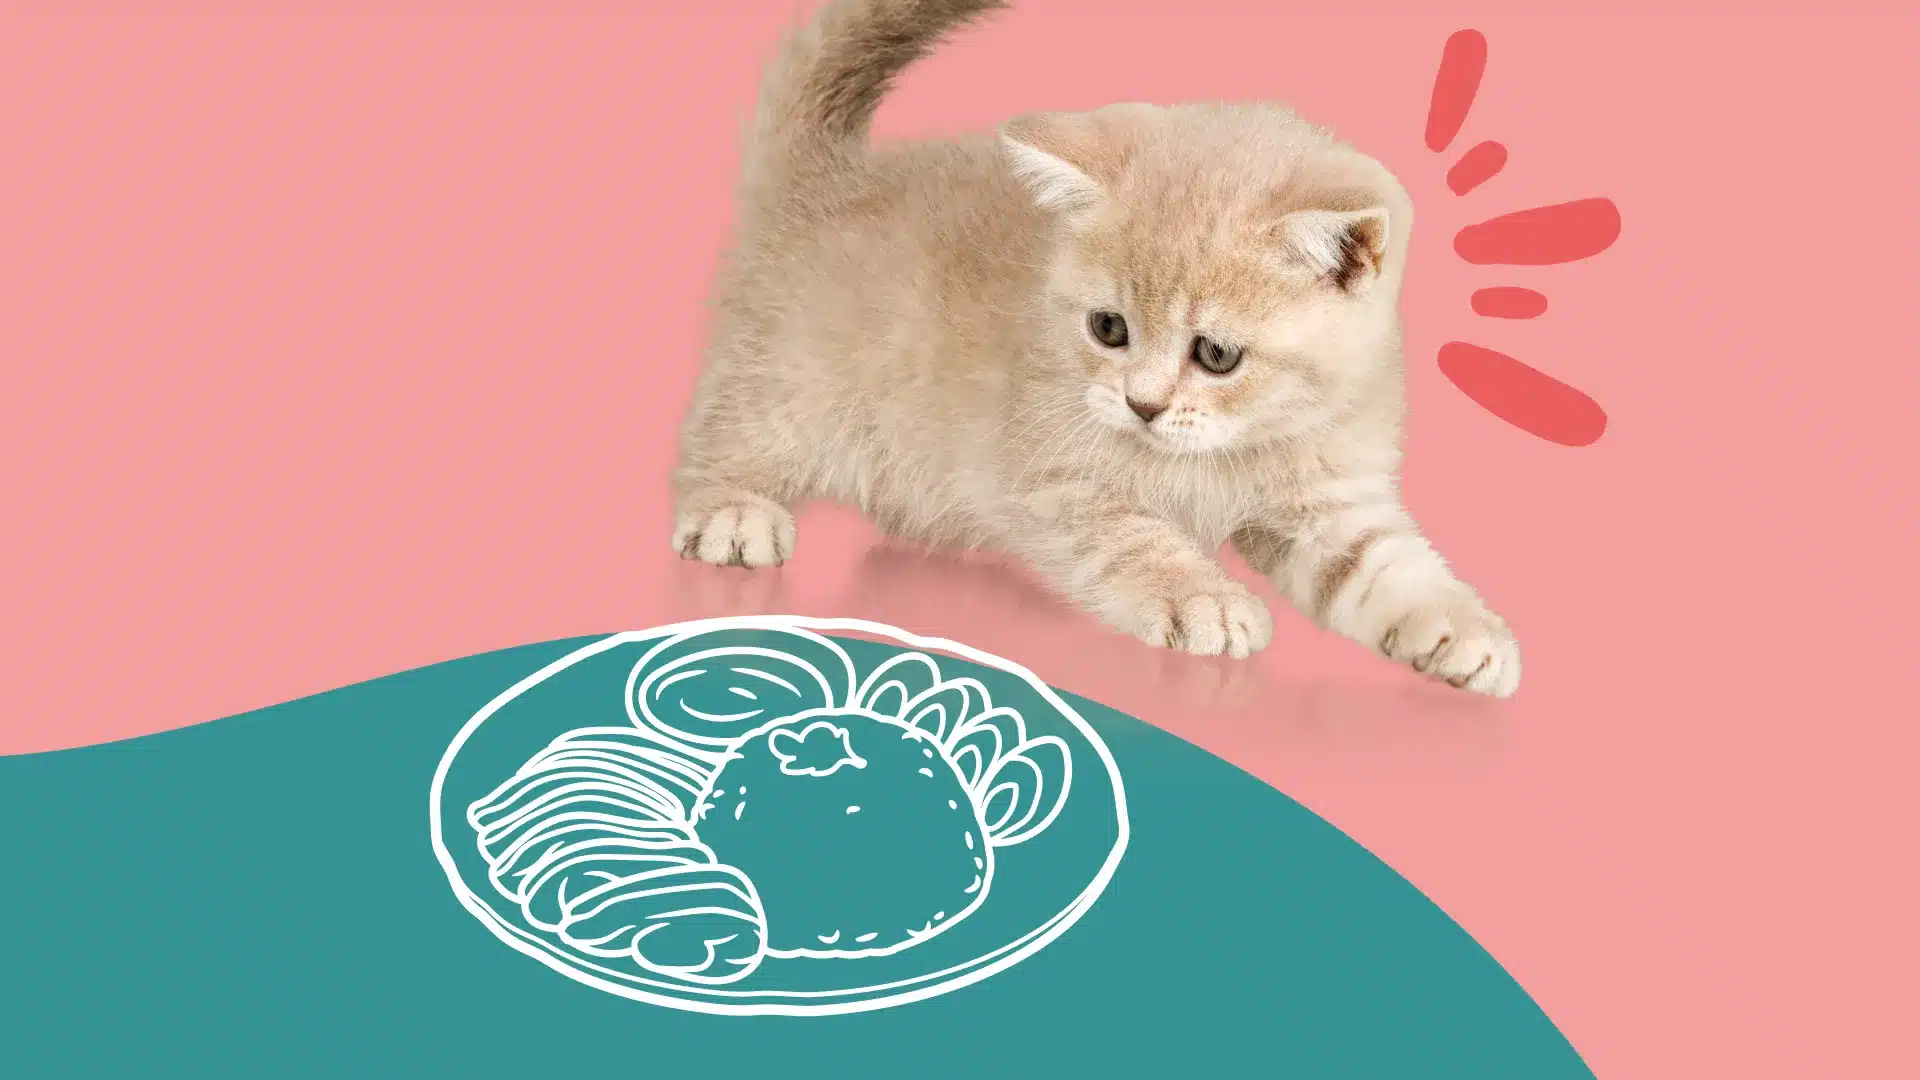 Quantité nourriture chaton - Nos conseils